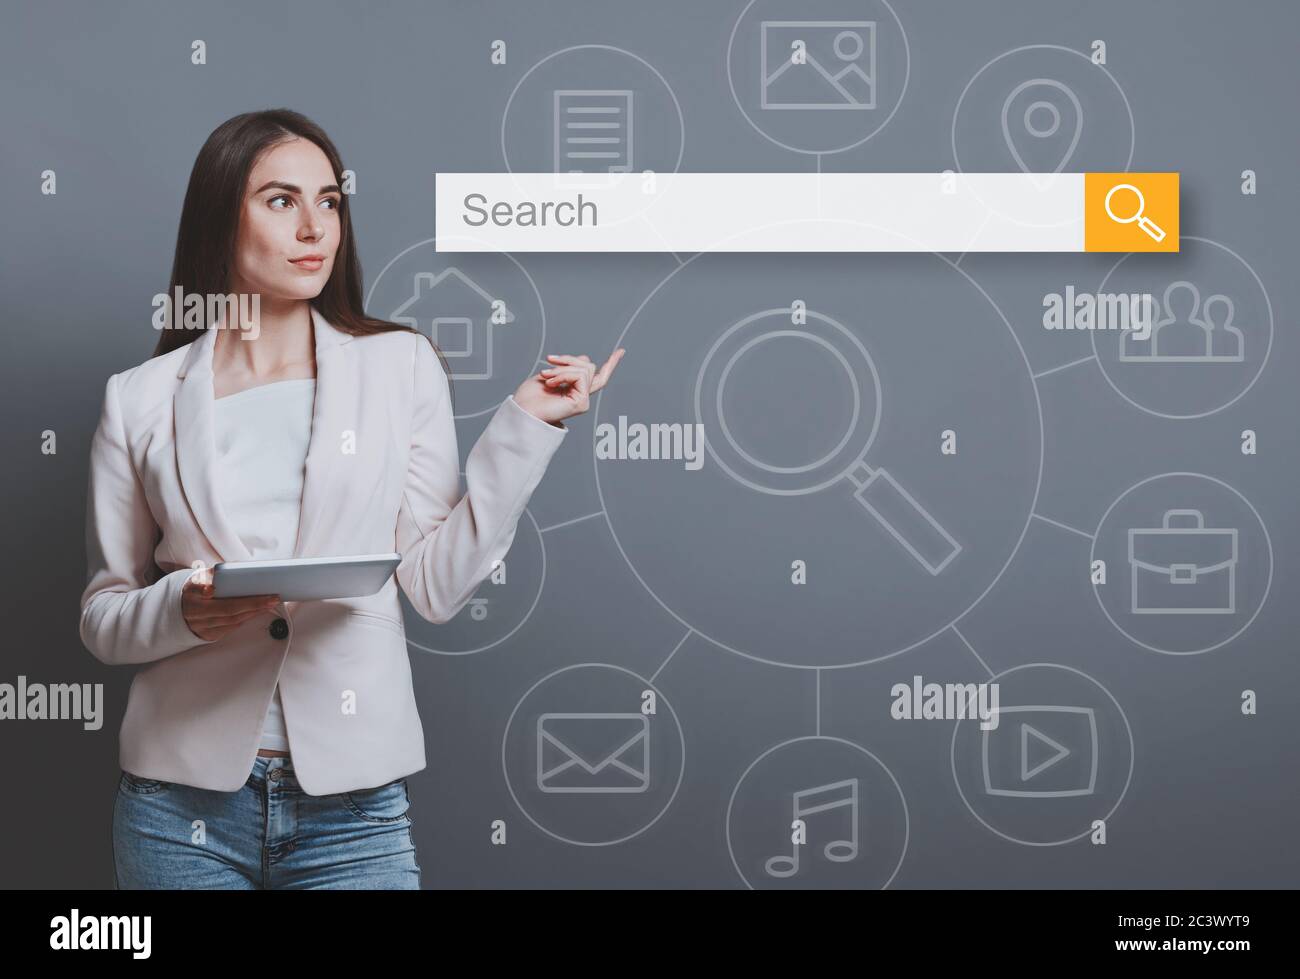 Femme d'affaires avec tablette pointant le doigt vers la barre de recherche, fond gris Banque D'Images